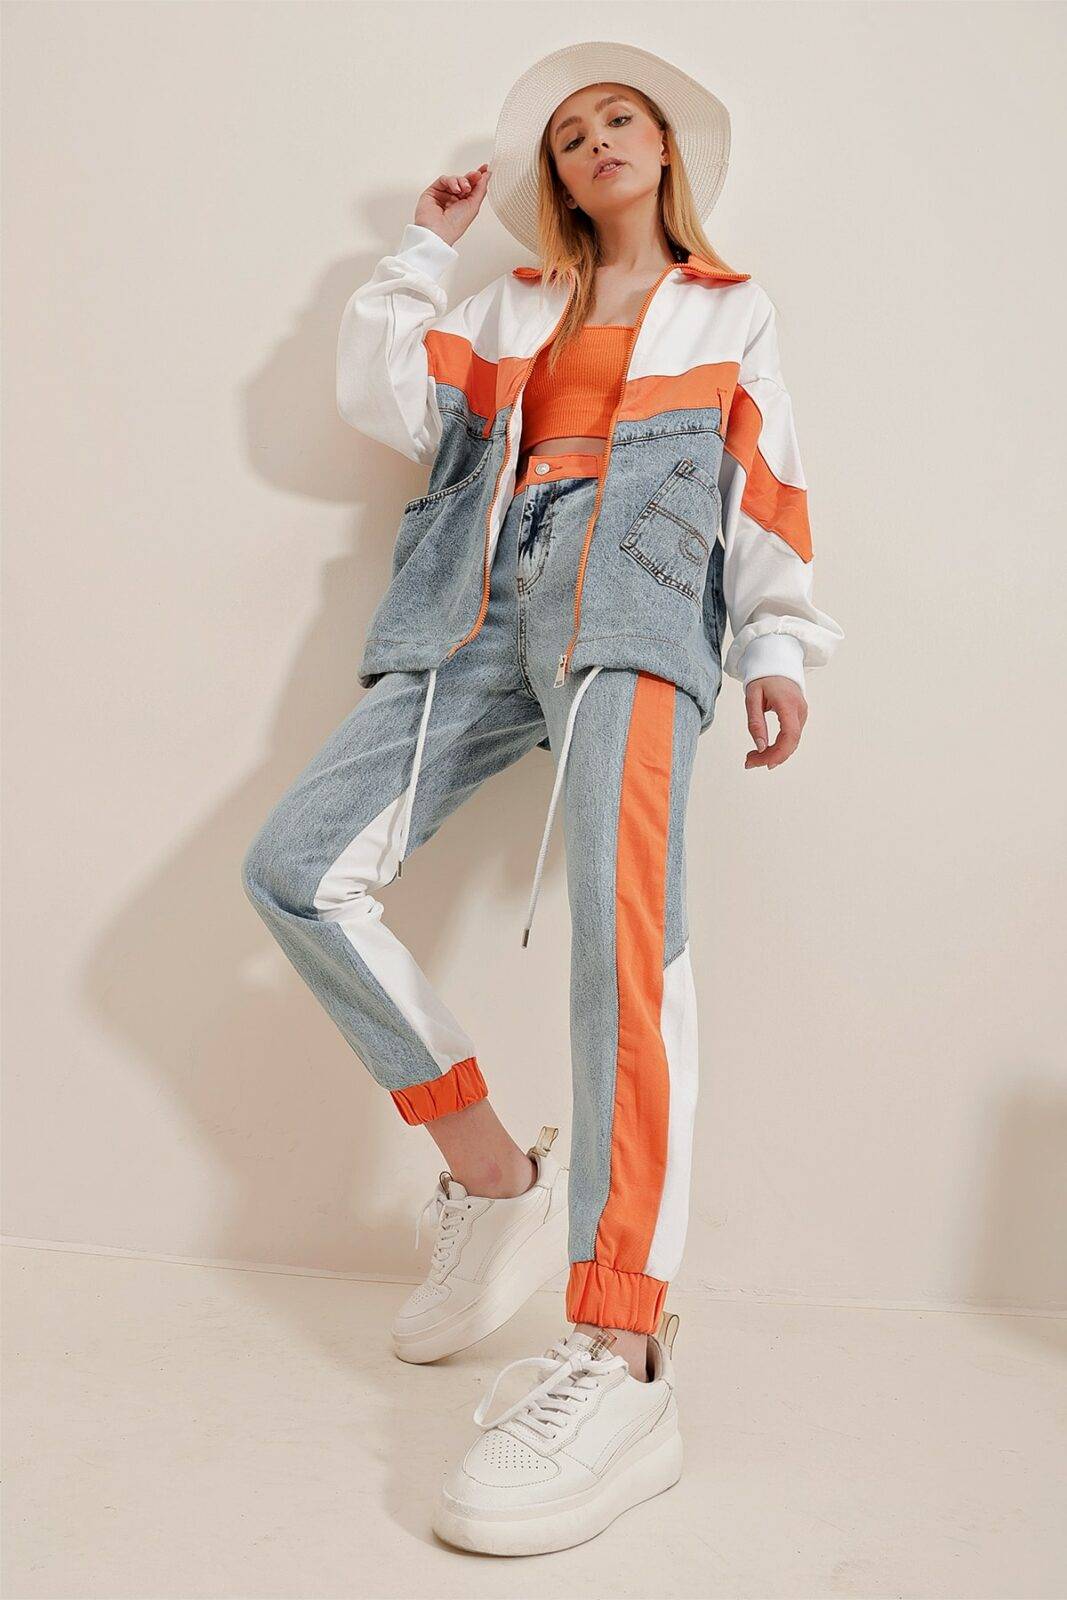 Trend Alaçatı Stili Jacket - Orange